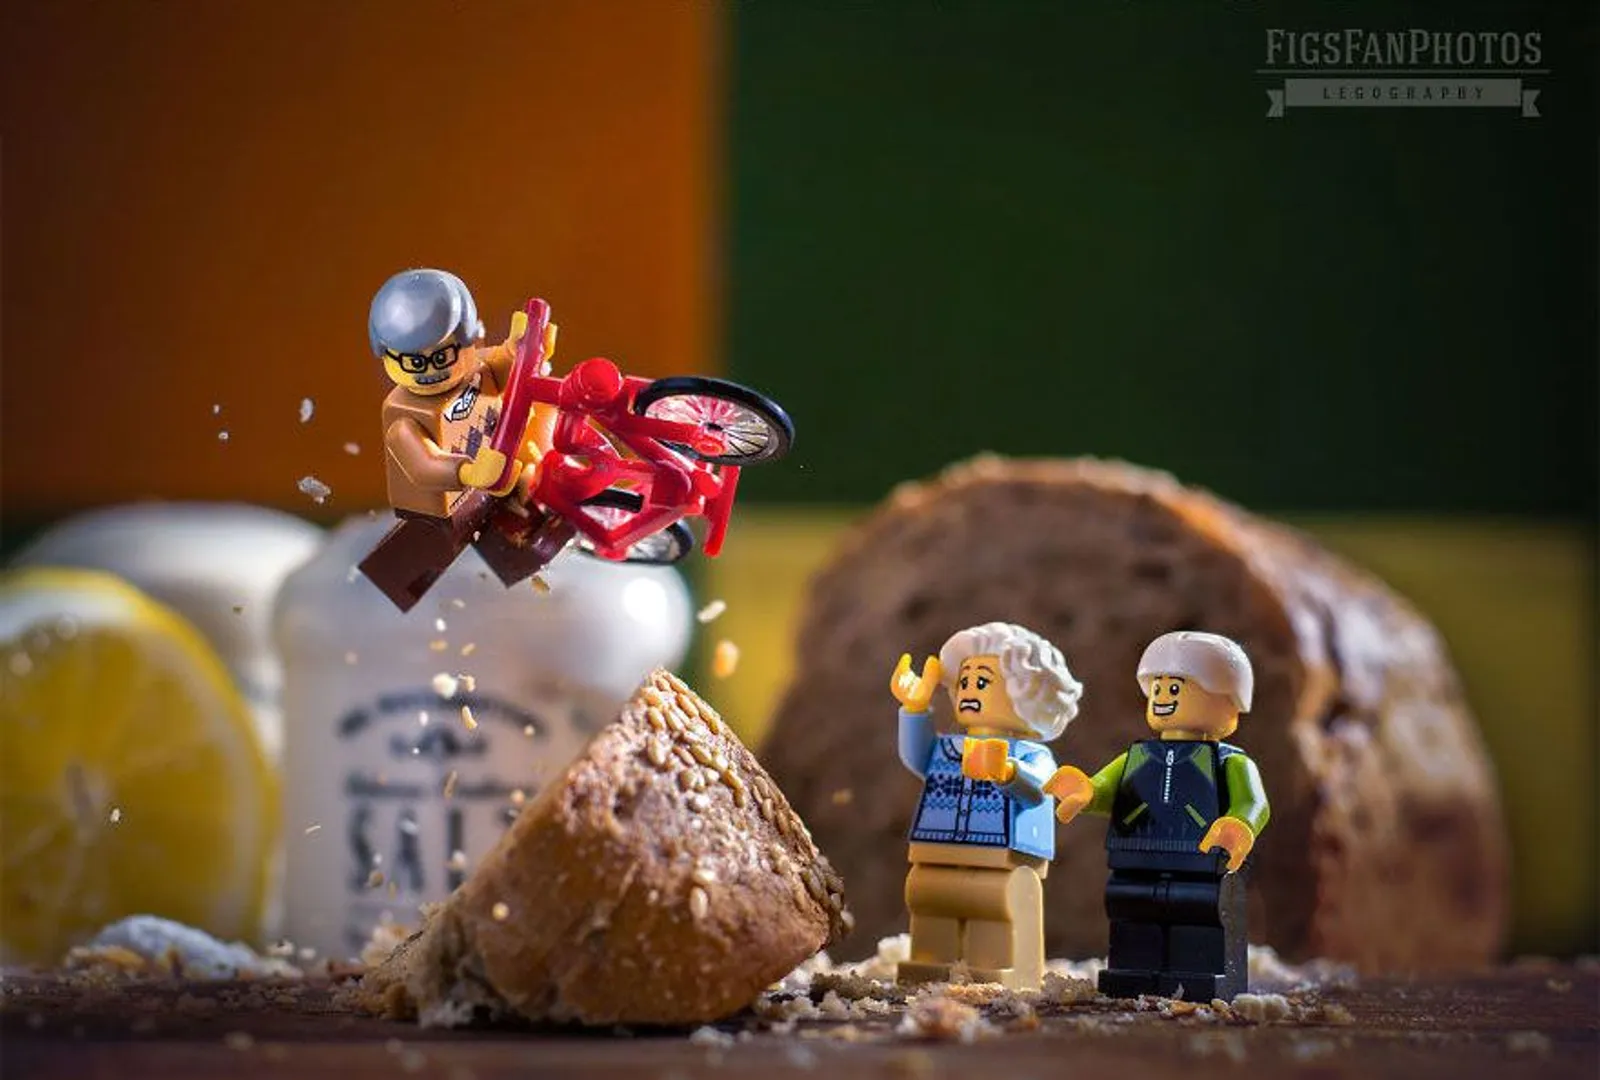 Fotografer Ini Sukses Berkreasi dengan Lego Jadi Foto yang Super Keren